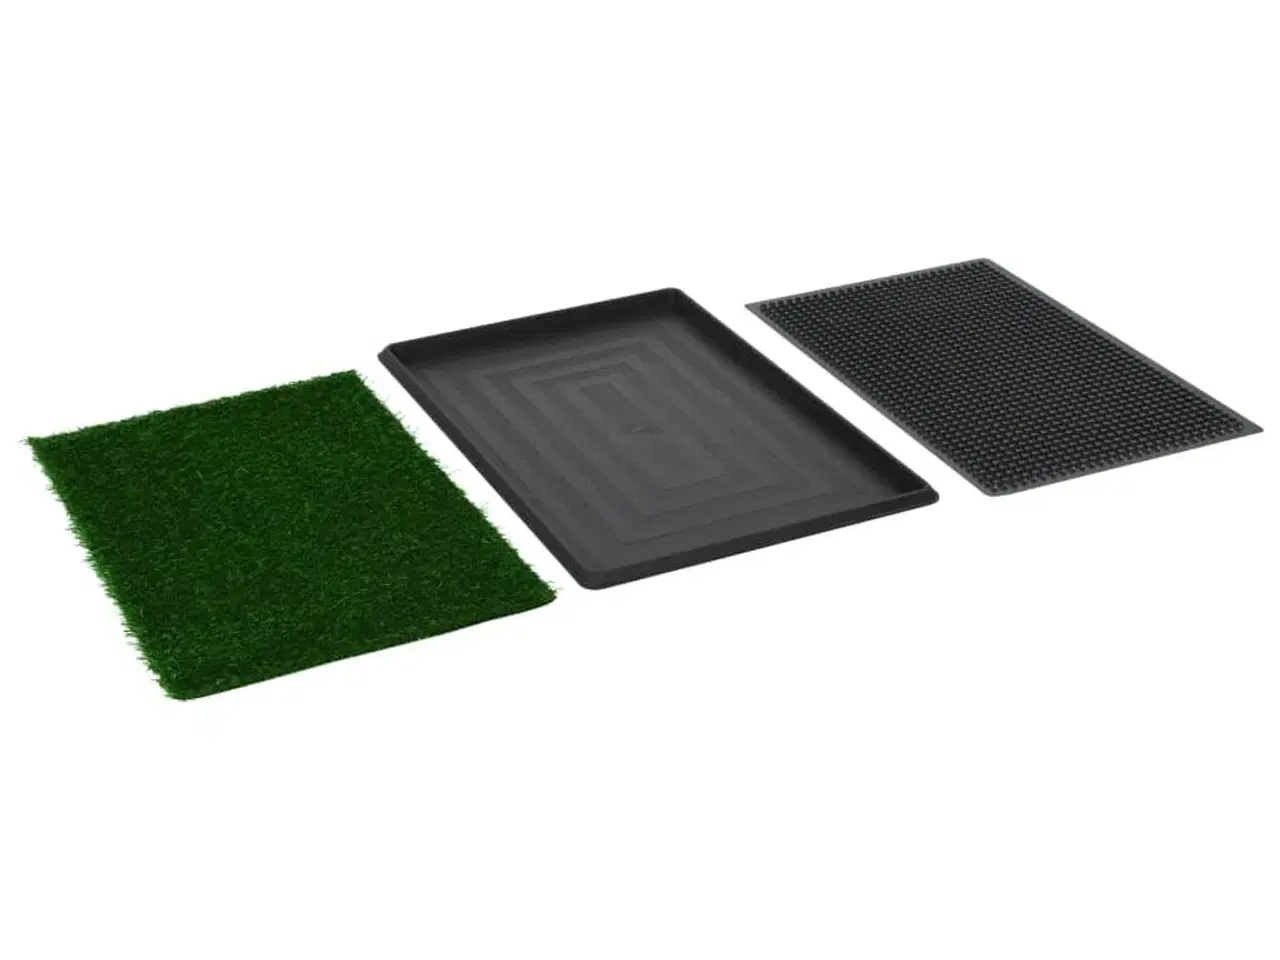 Billede 8 - Kæledyrstoilet med bakke og kunstgræs 2 stk. 76x51x3 cm grøn